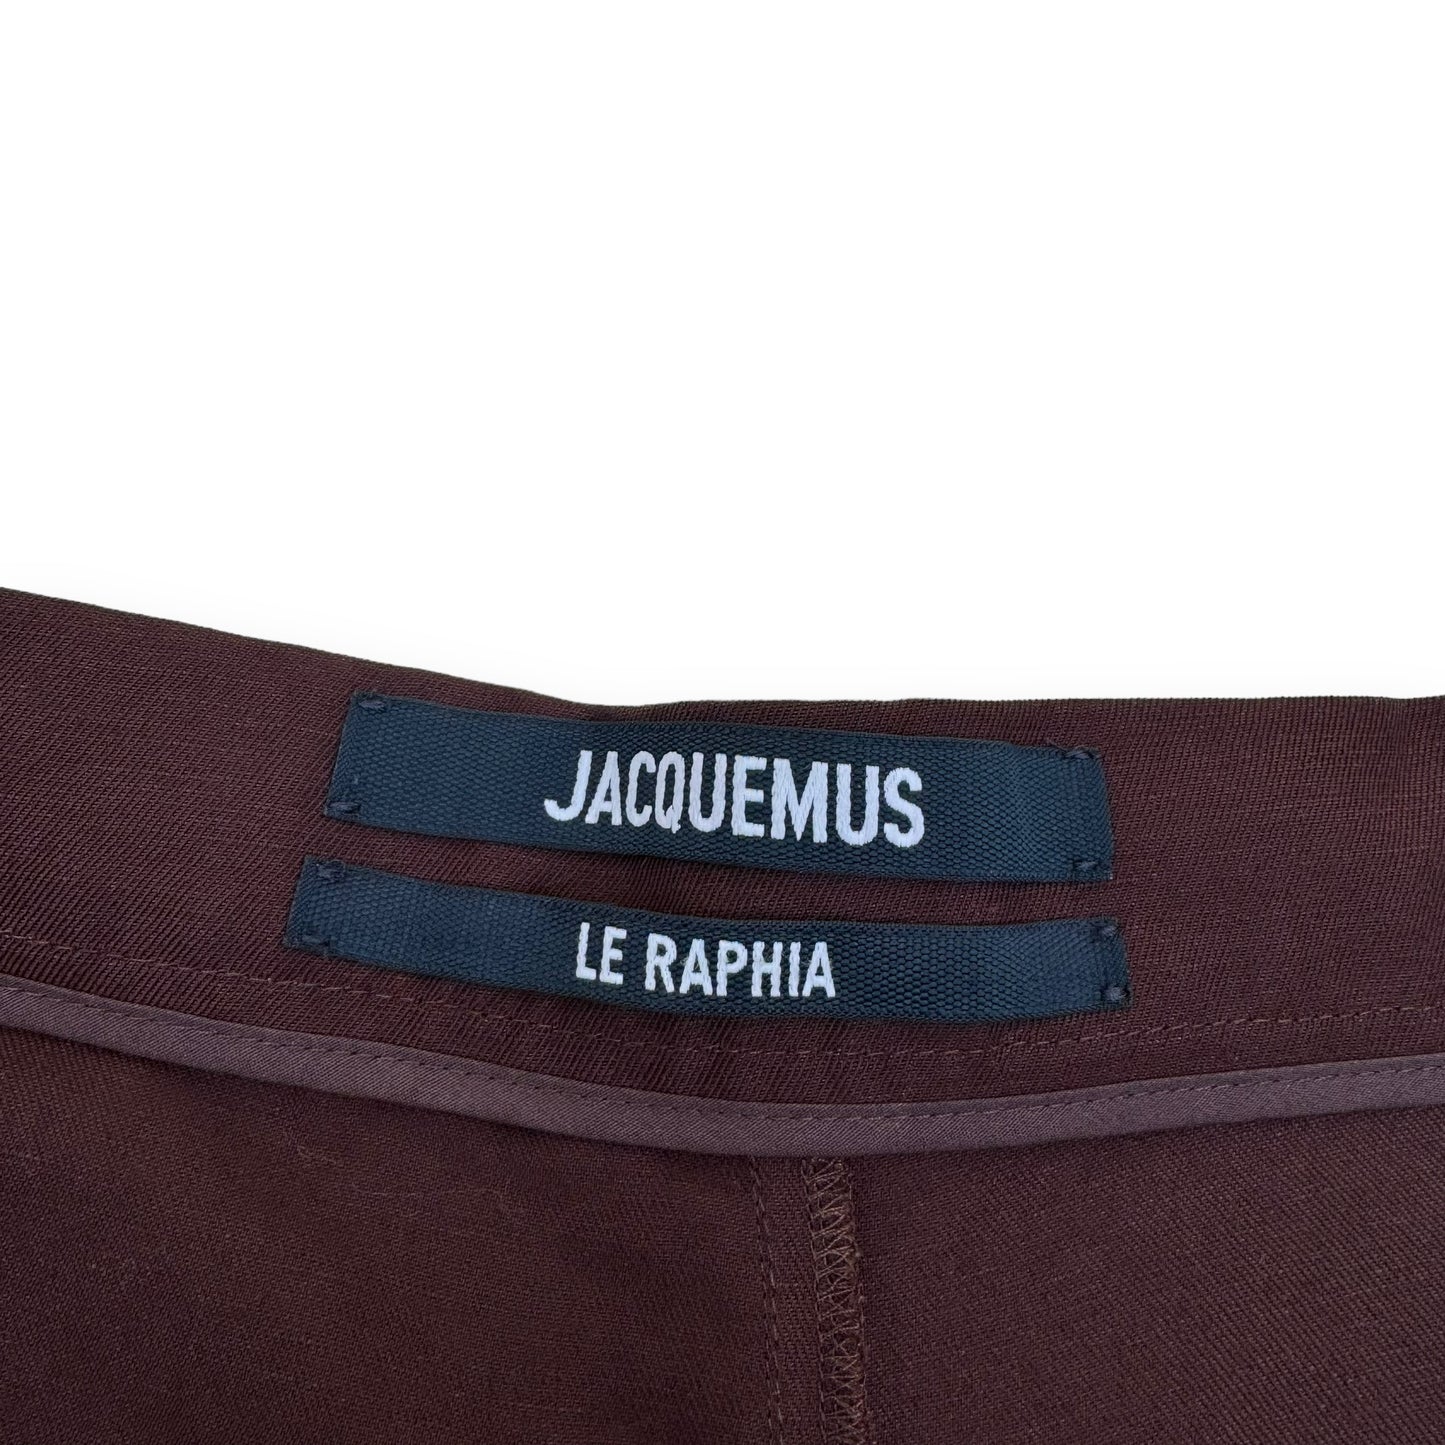 JACQUEMUS LE RAPHIA LINEN SHORTS BURGUNDY XL